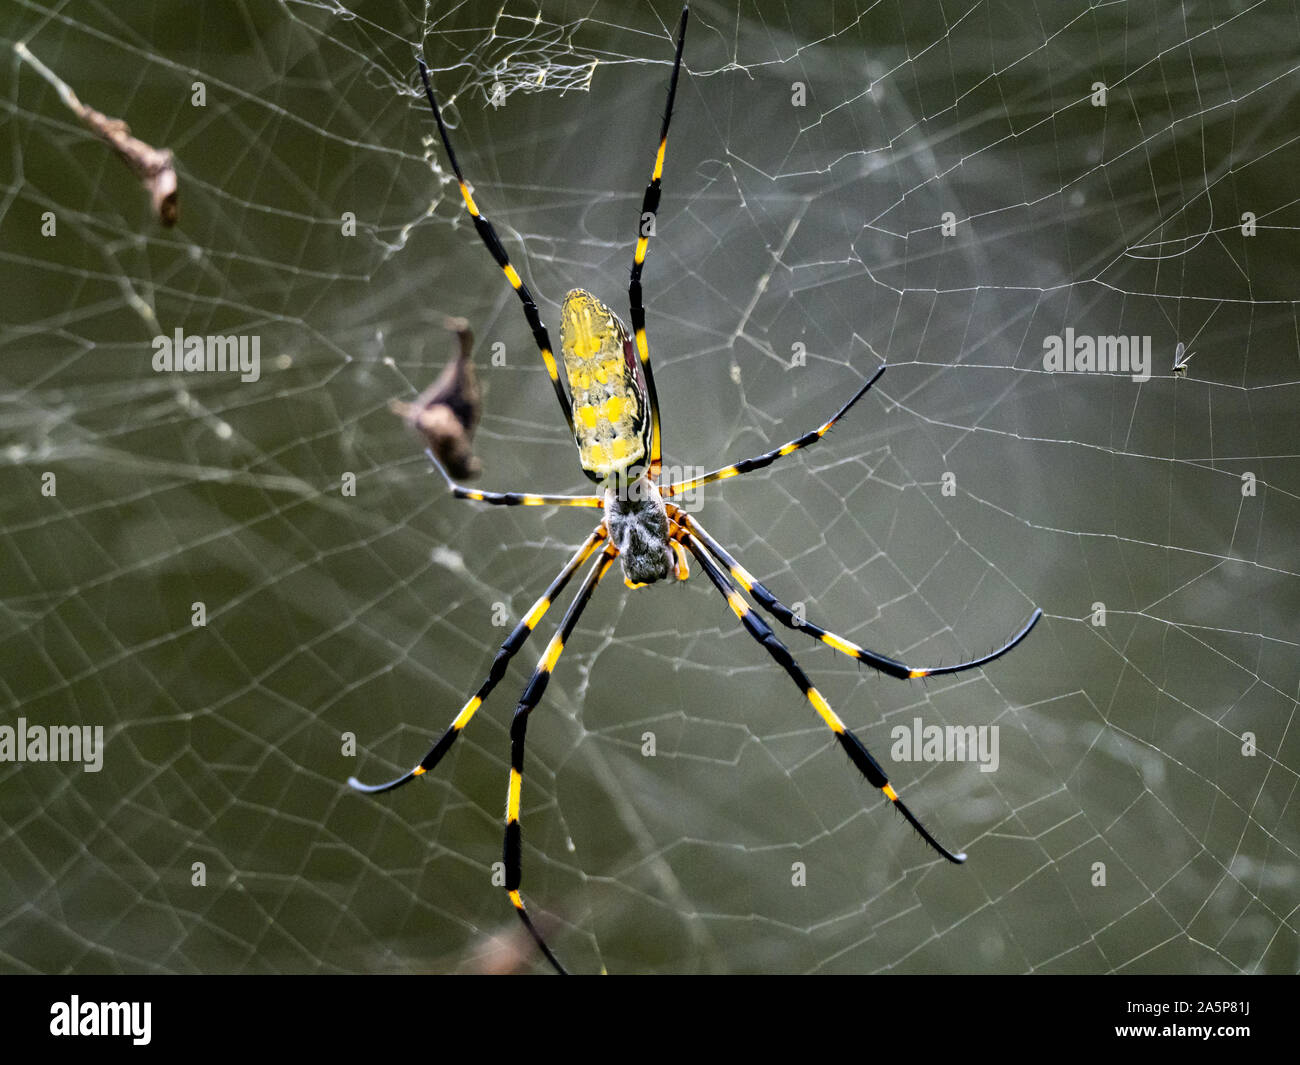 Une Nephila clavata, un type d'orb weaver spider originaire du Japon où elle est appelée-joro joro gumo ou spider, attend dans son site web de proies. Banque D'Images